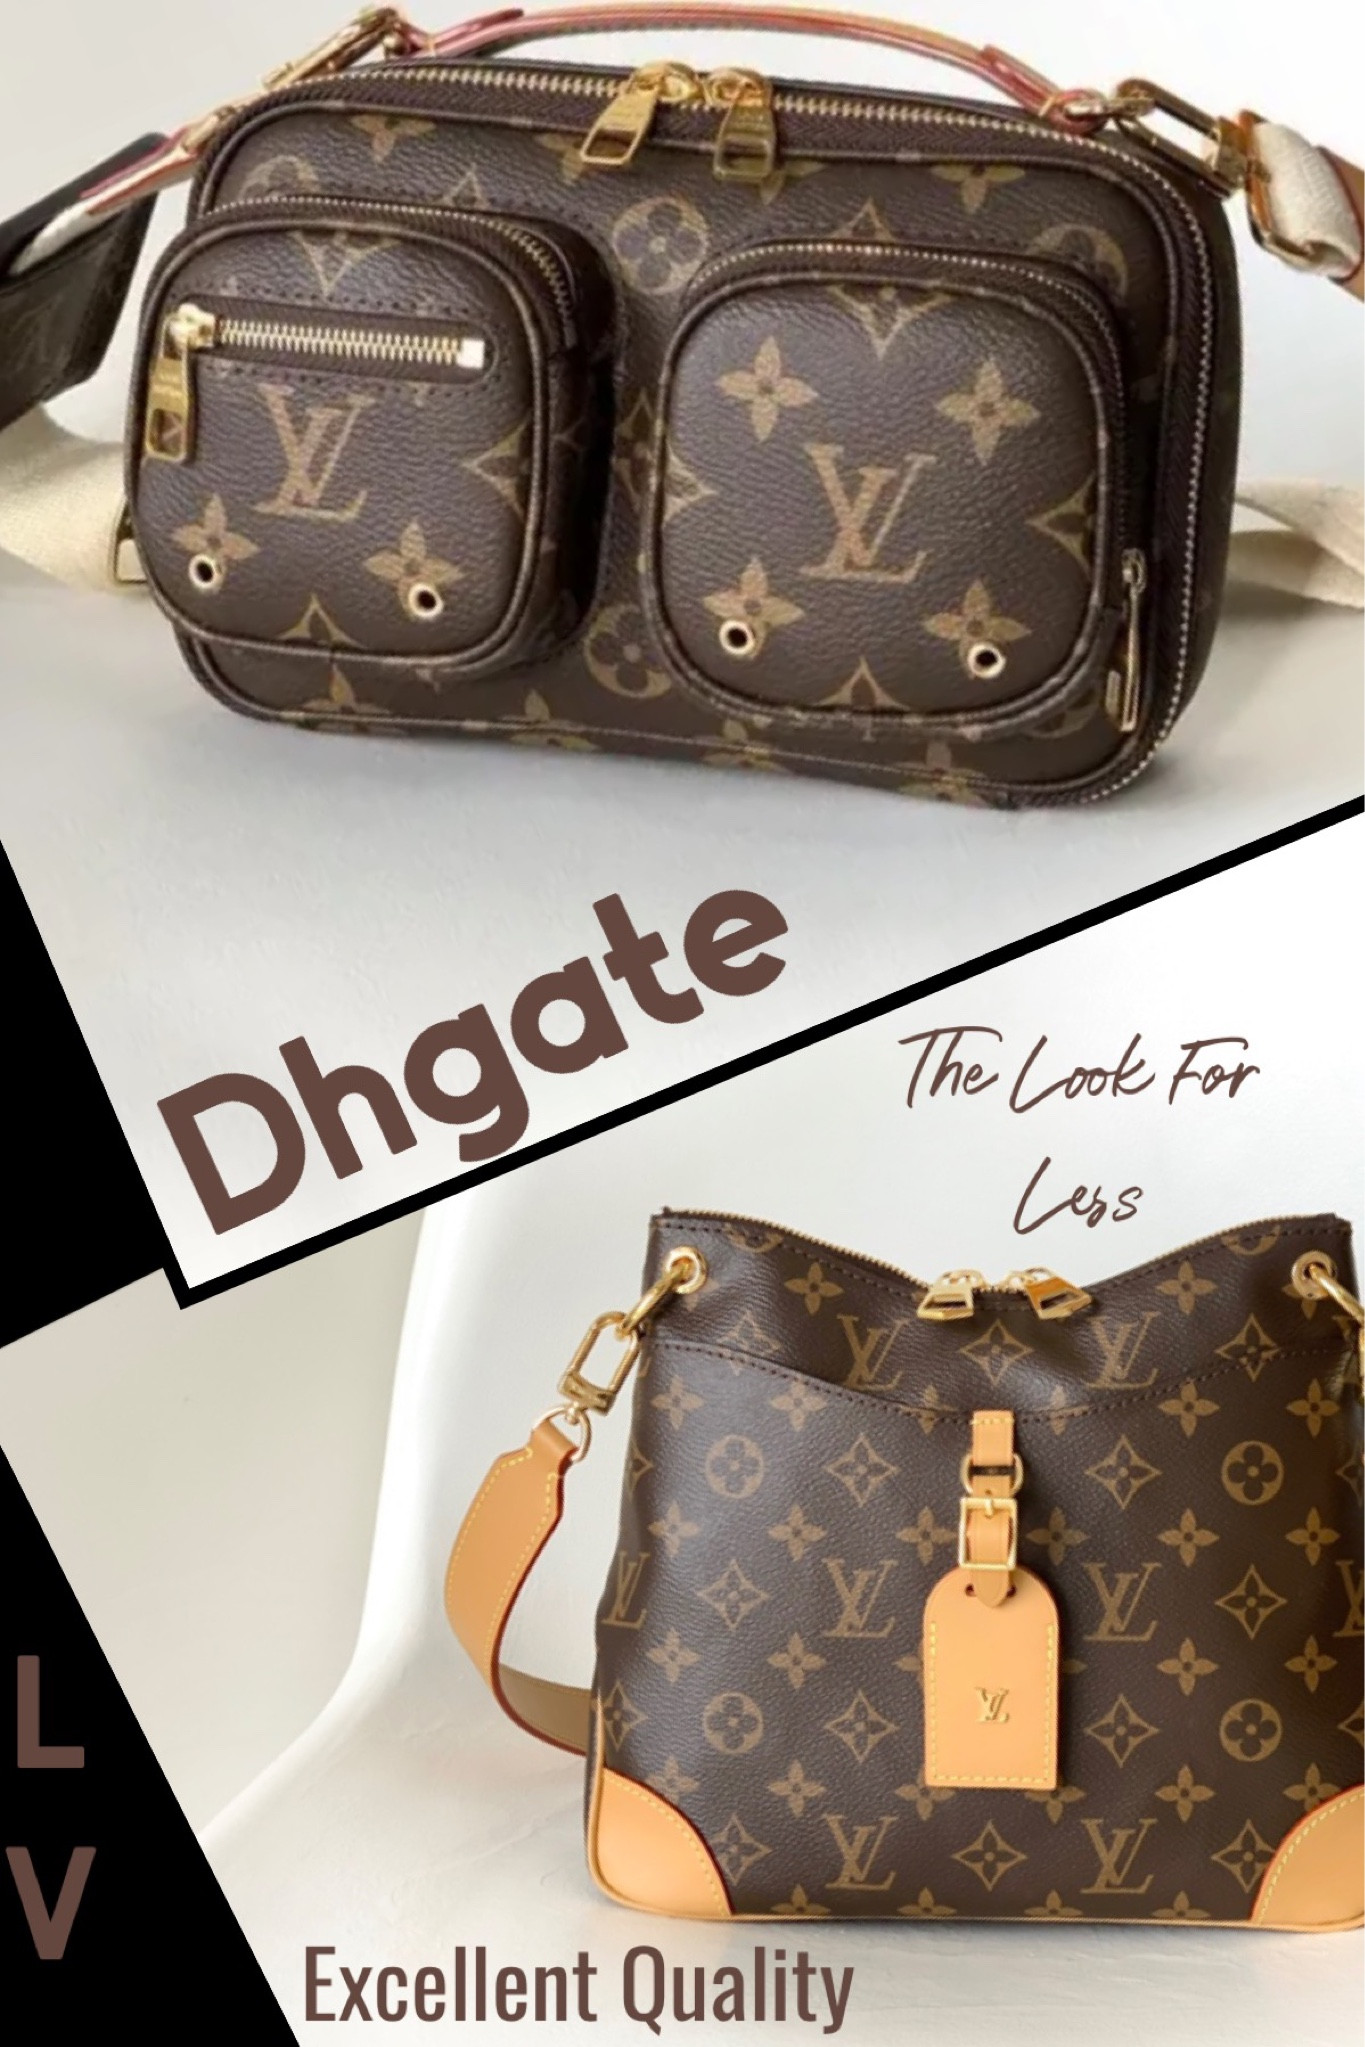 How to Find Designer Dupes on DHgate - Affordabo